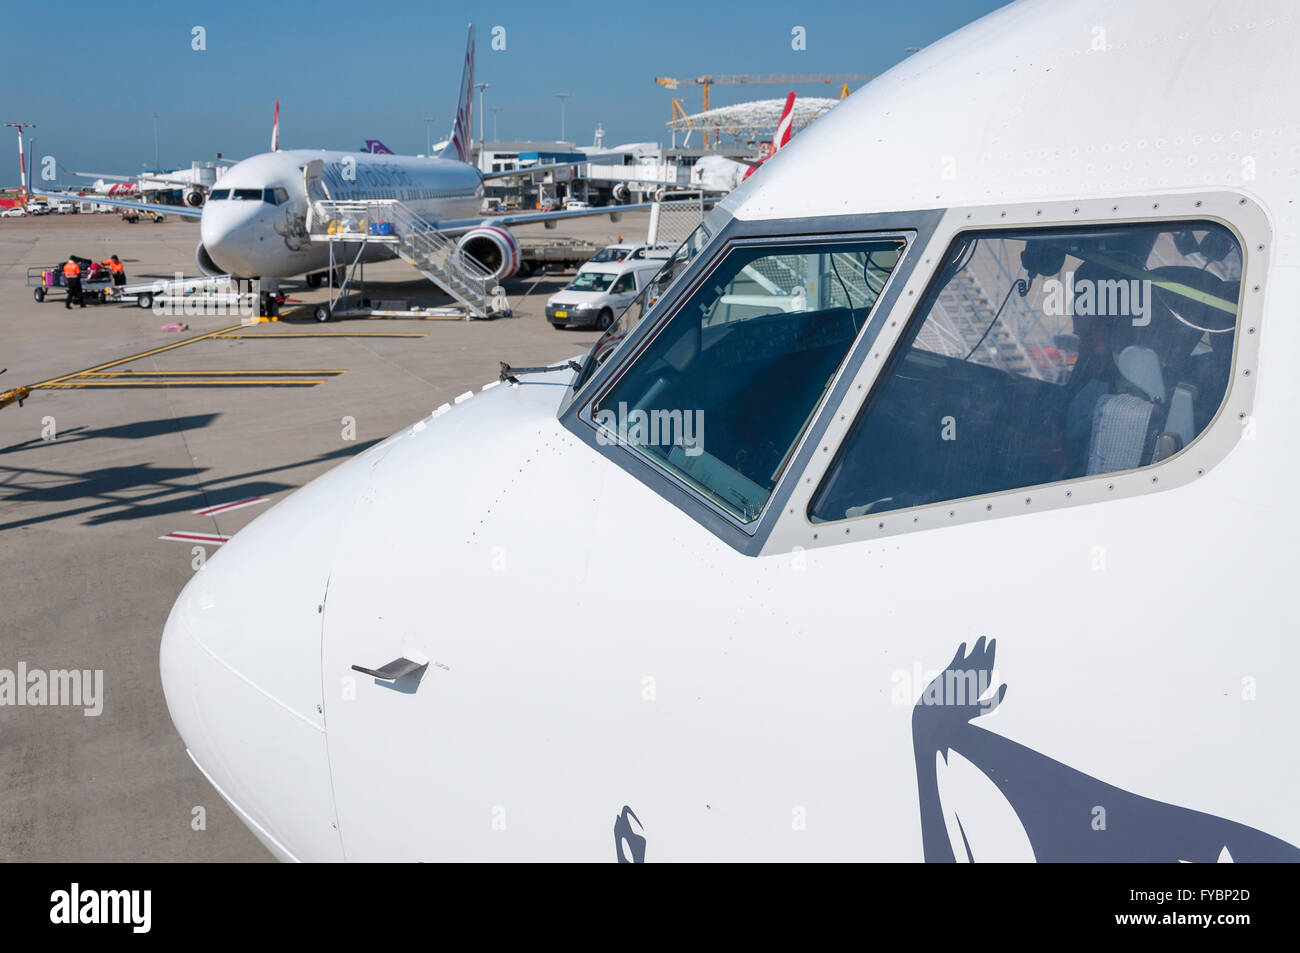 Avion sur tarmac de l'aéroport de Sydney Kingsford Smith, Mascot, Sydney, New South Wales, Australia Banque D'Images